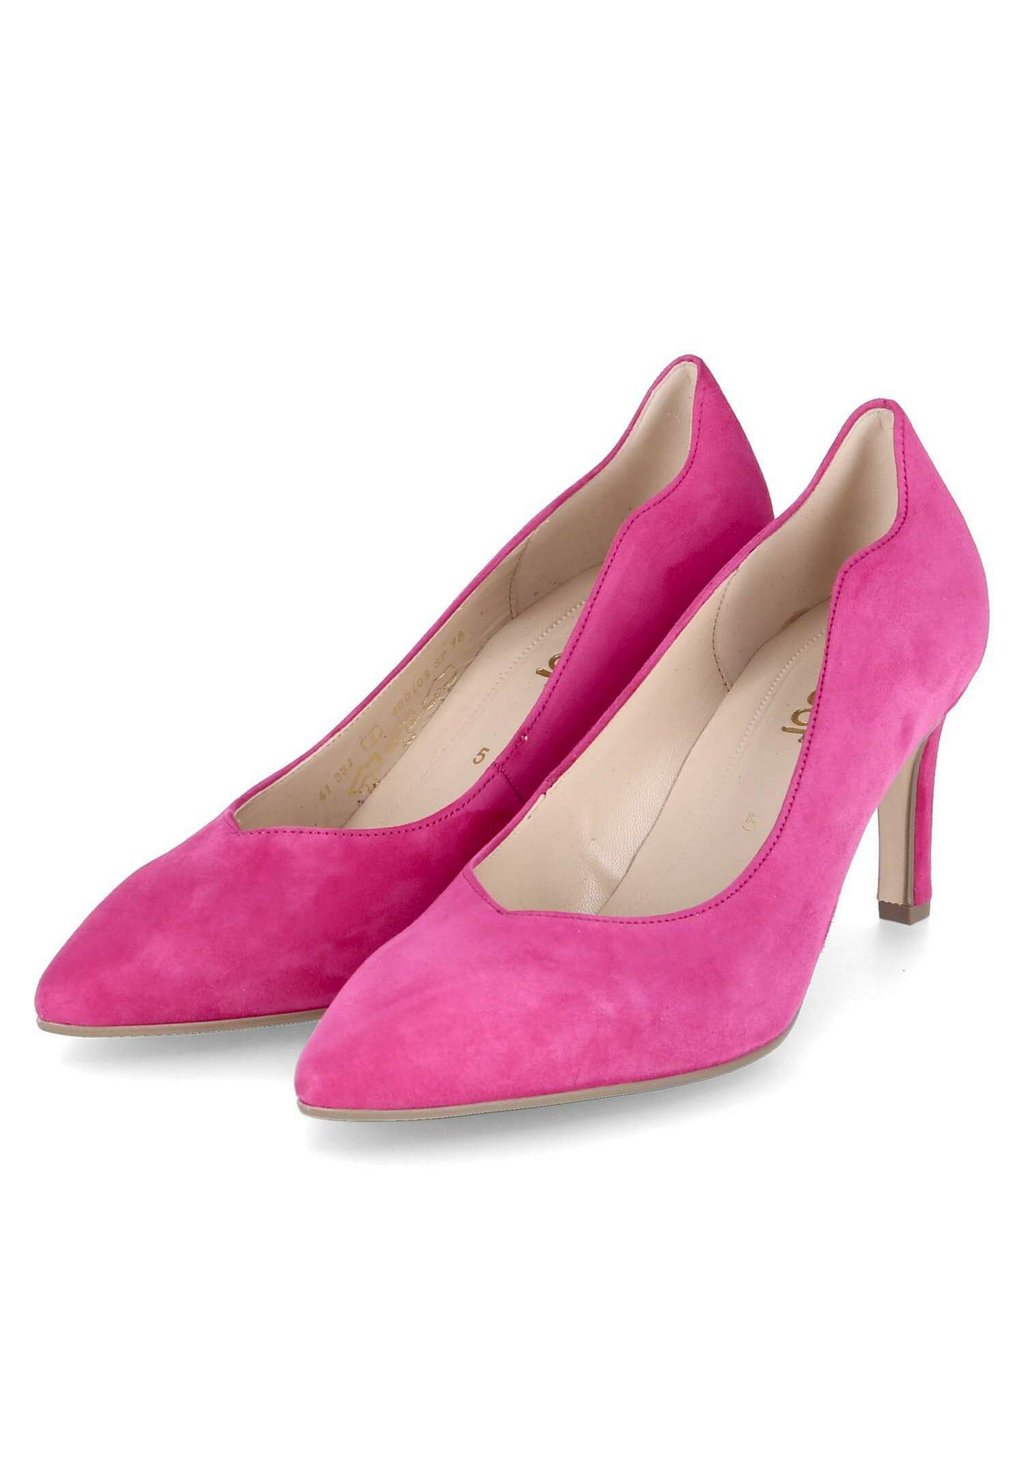 Туфли на высоком каблуке Gabor, цвет pink туфли на высоком каблуке marco tozzi цвет hot pink